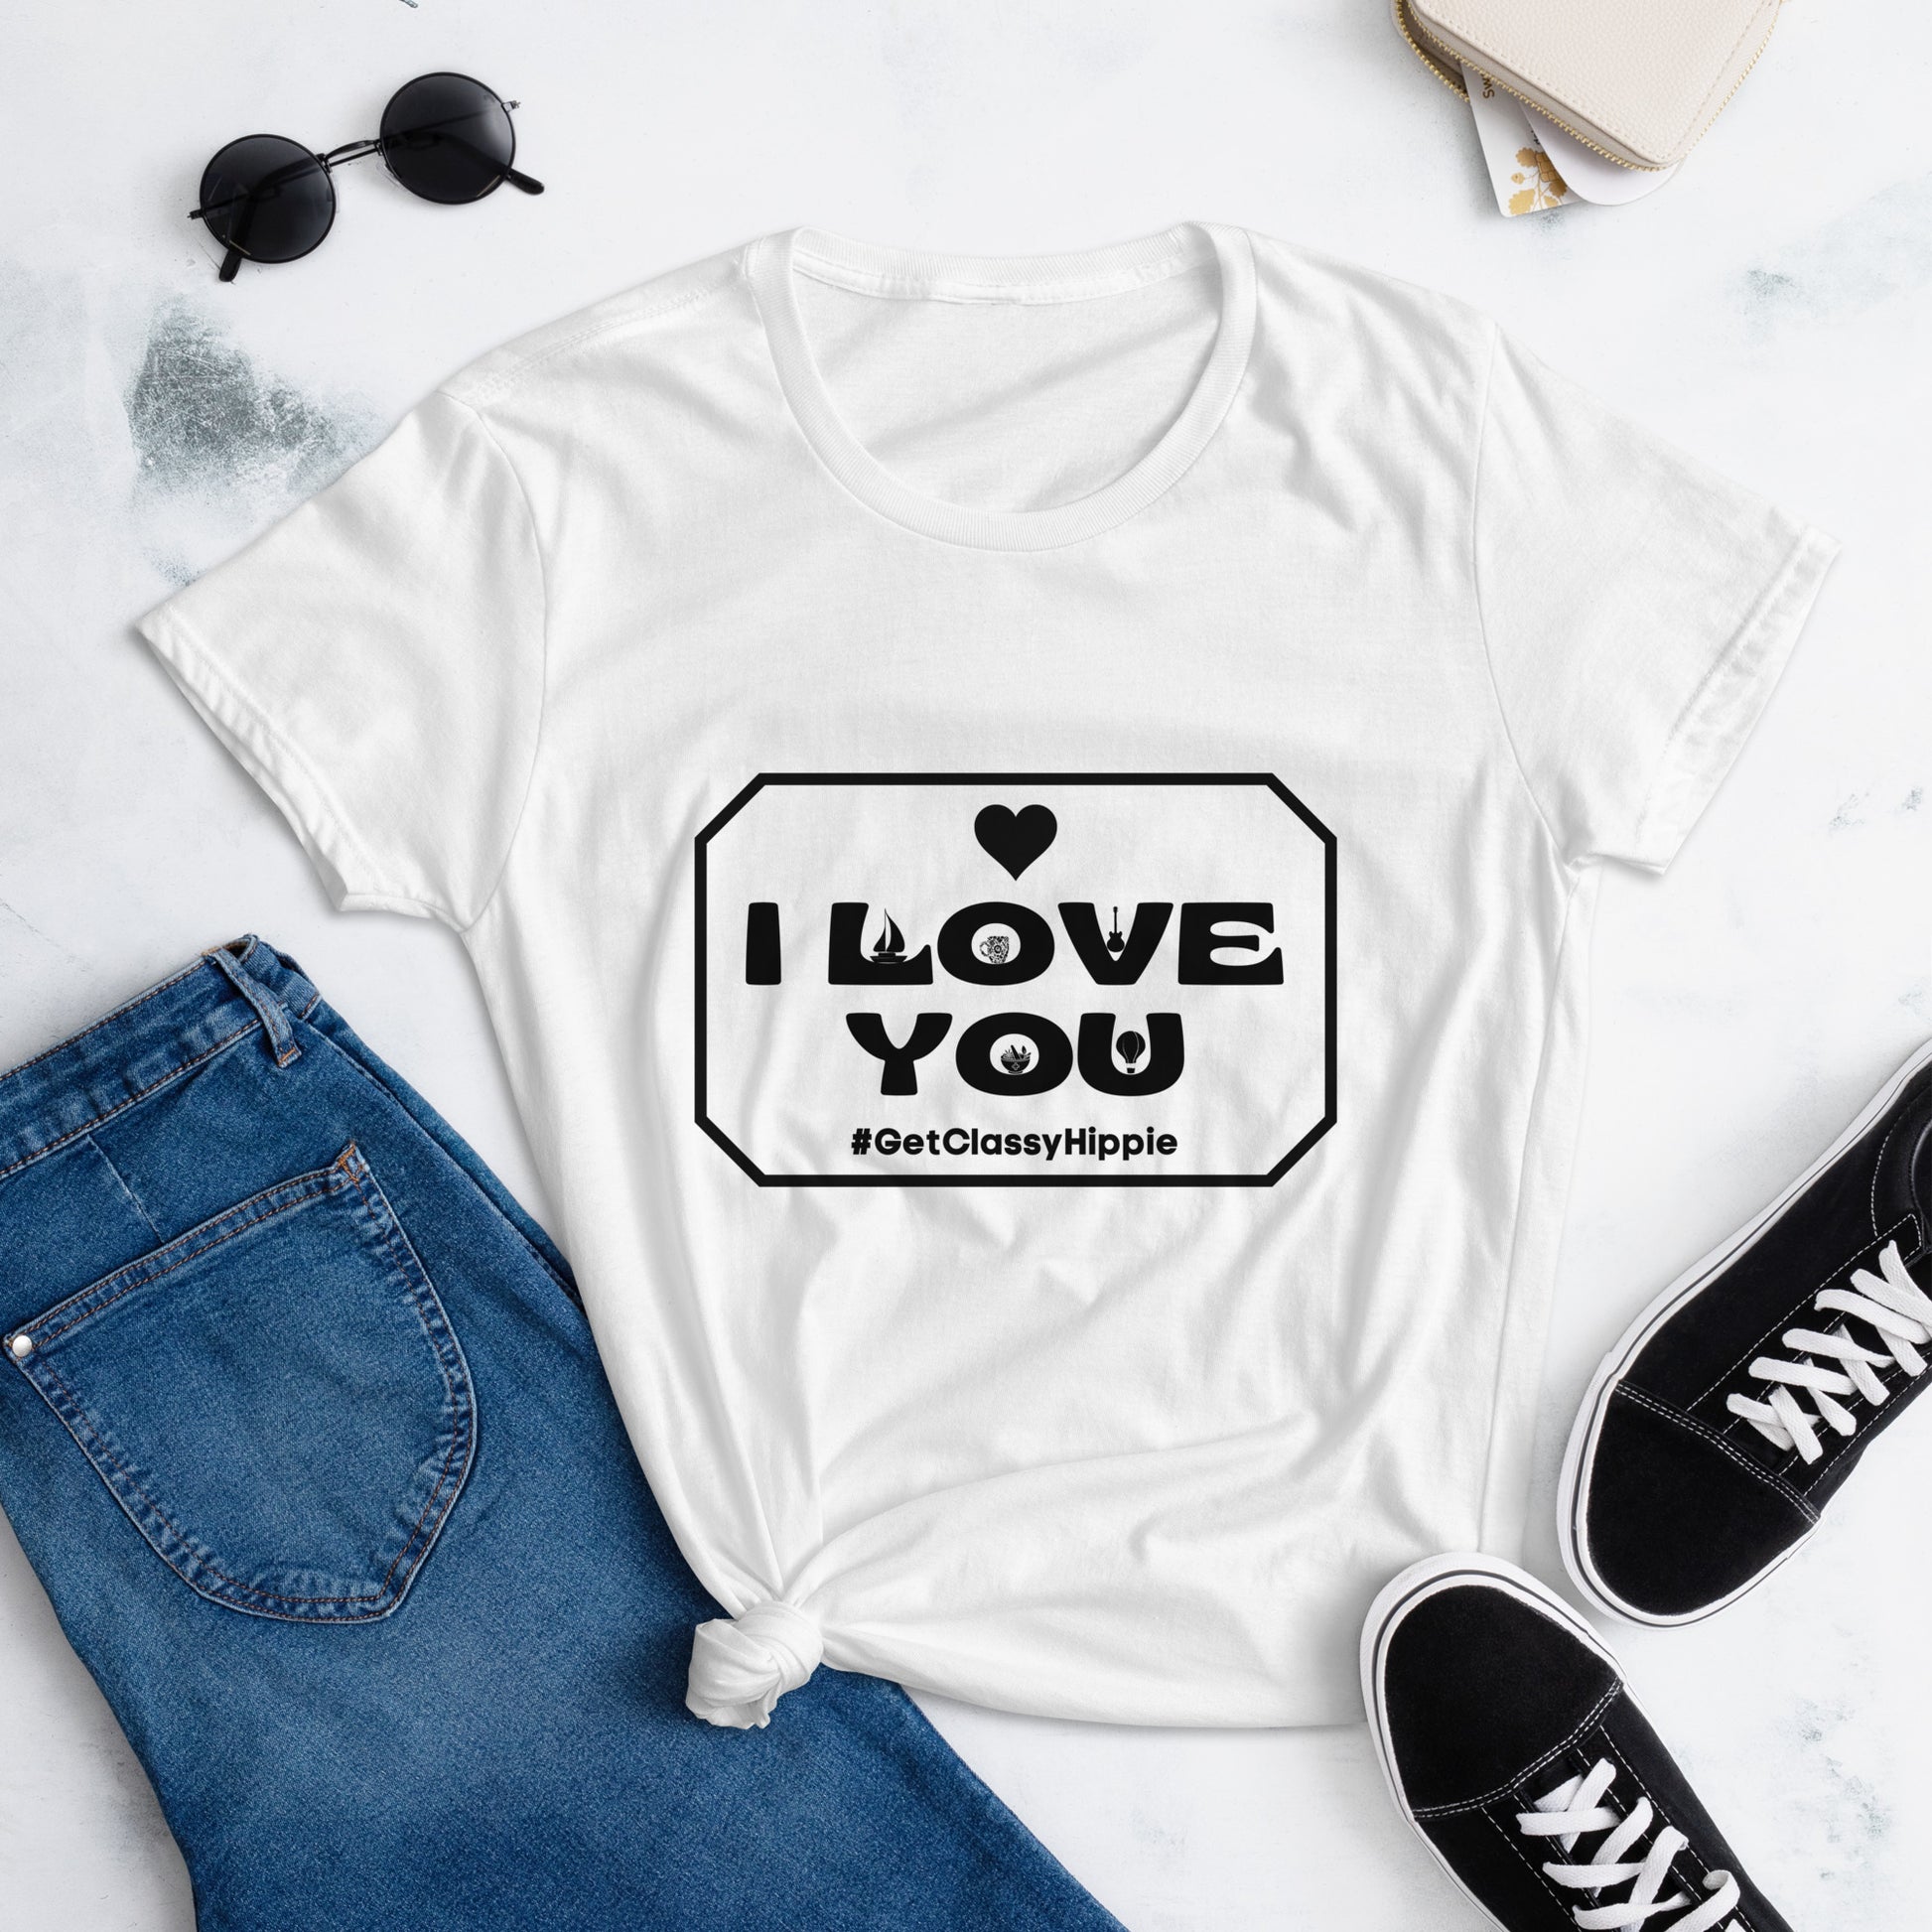 Women's I Love You t-shirt